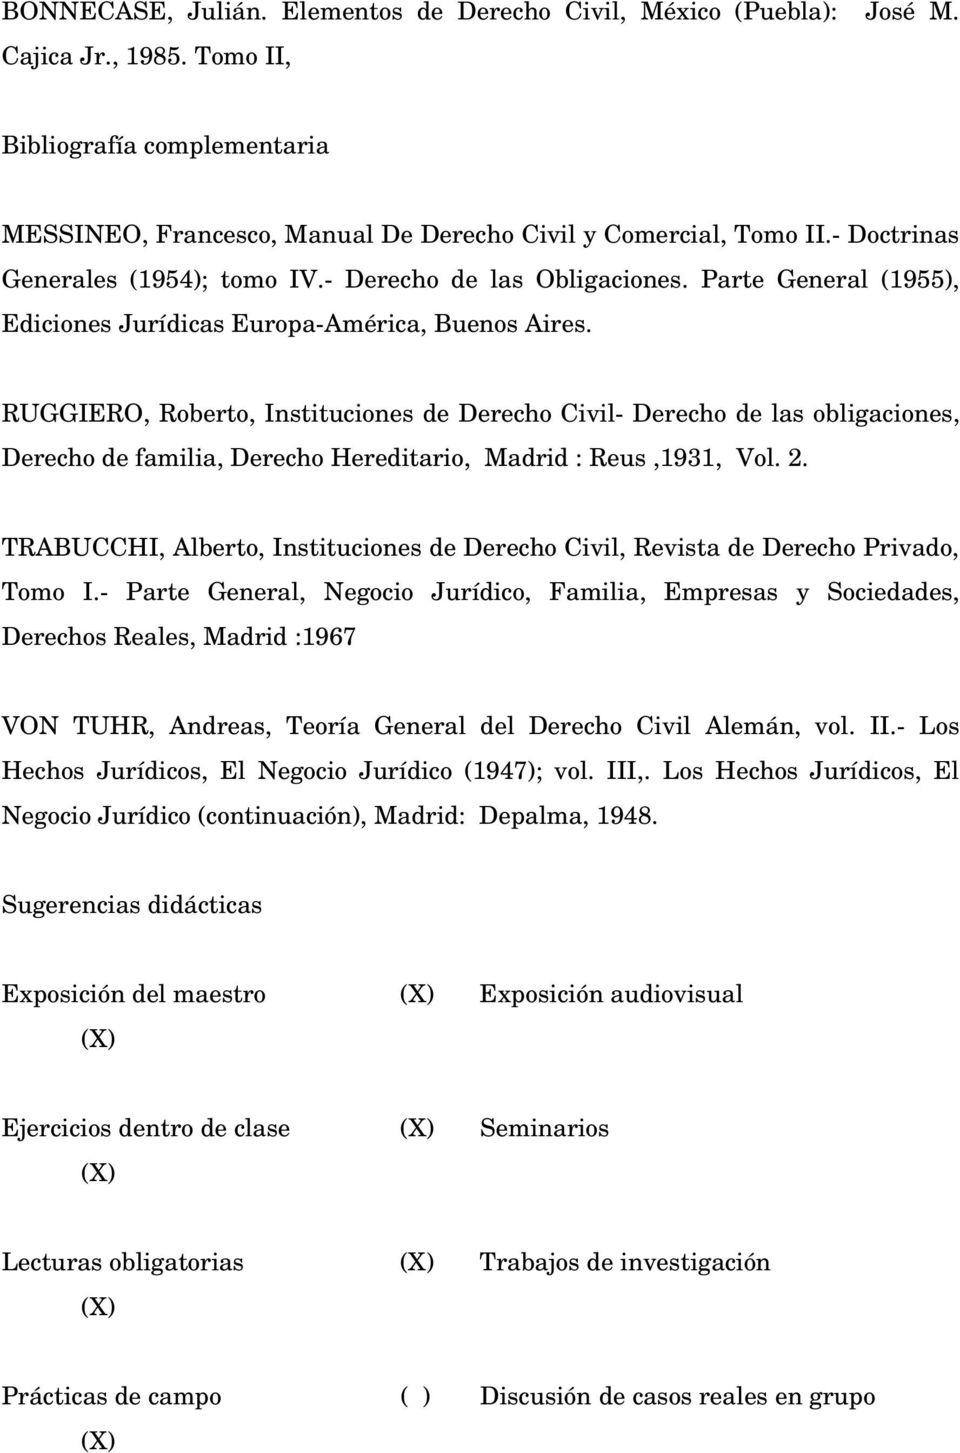 RUGGIERO, Roberto, Instituciones de Derecho Civil- Derecho de las obligaciones, Derecho de familia, Derecho Hereditario, Madrid : Reus,1931, Vol. 2.